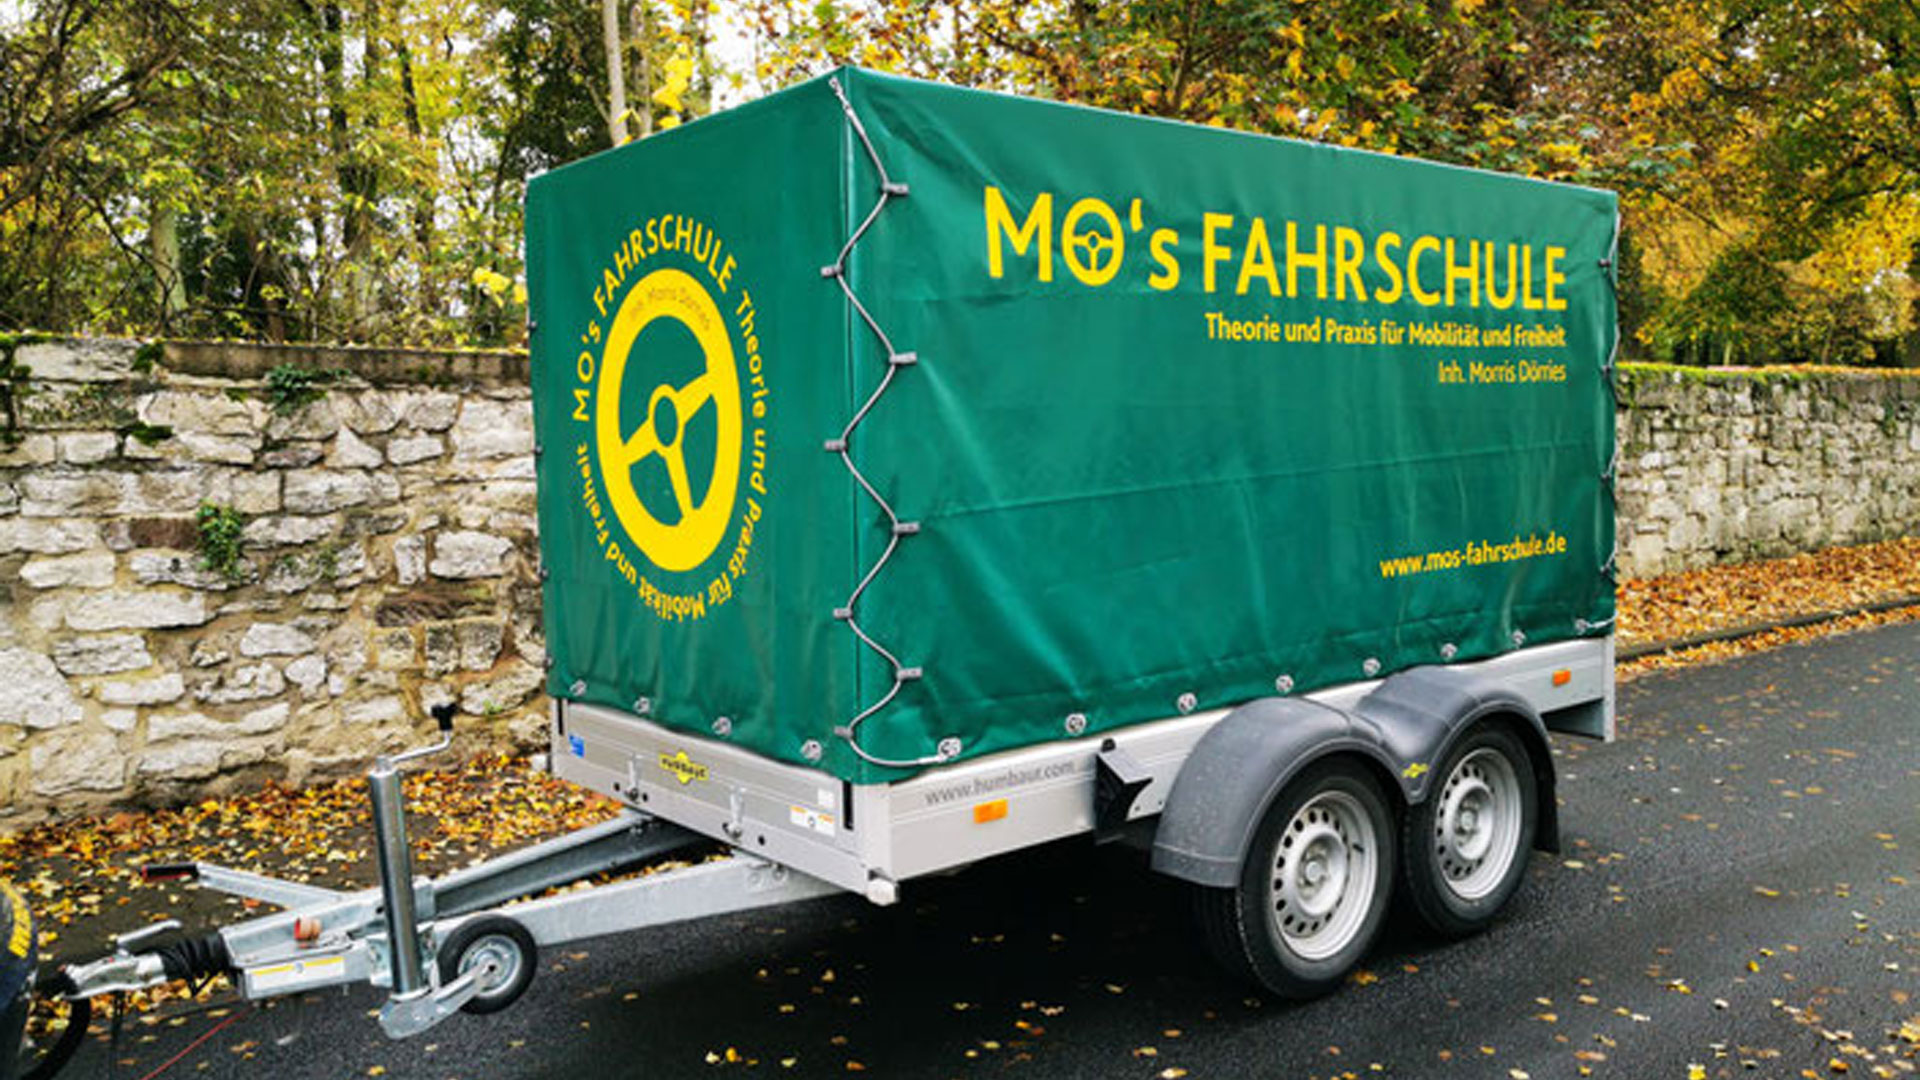 Fahrschulanhänger - MO's FAHRSCHULE | Morris Dörries | 37574 Einbeck | Theorie und Praxis für Mobilität und Freiheit